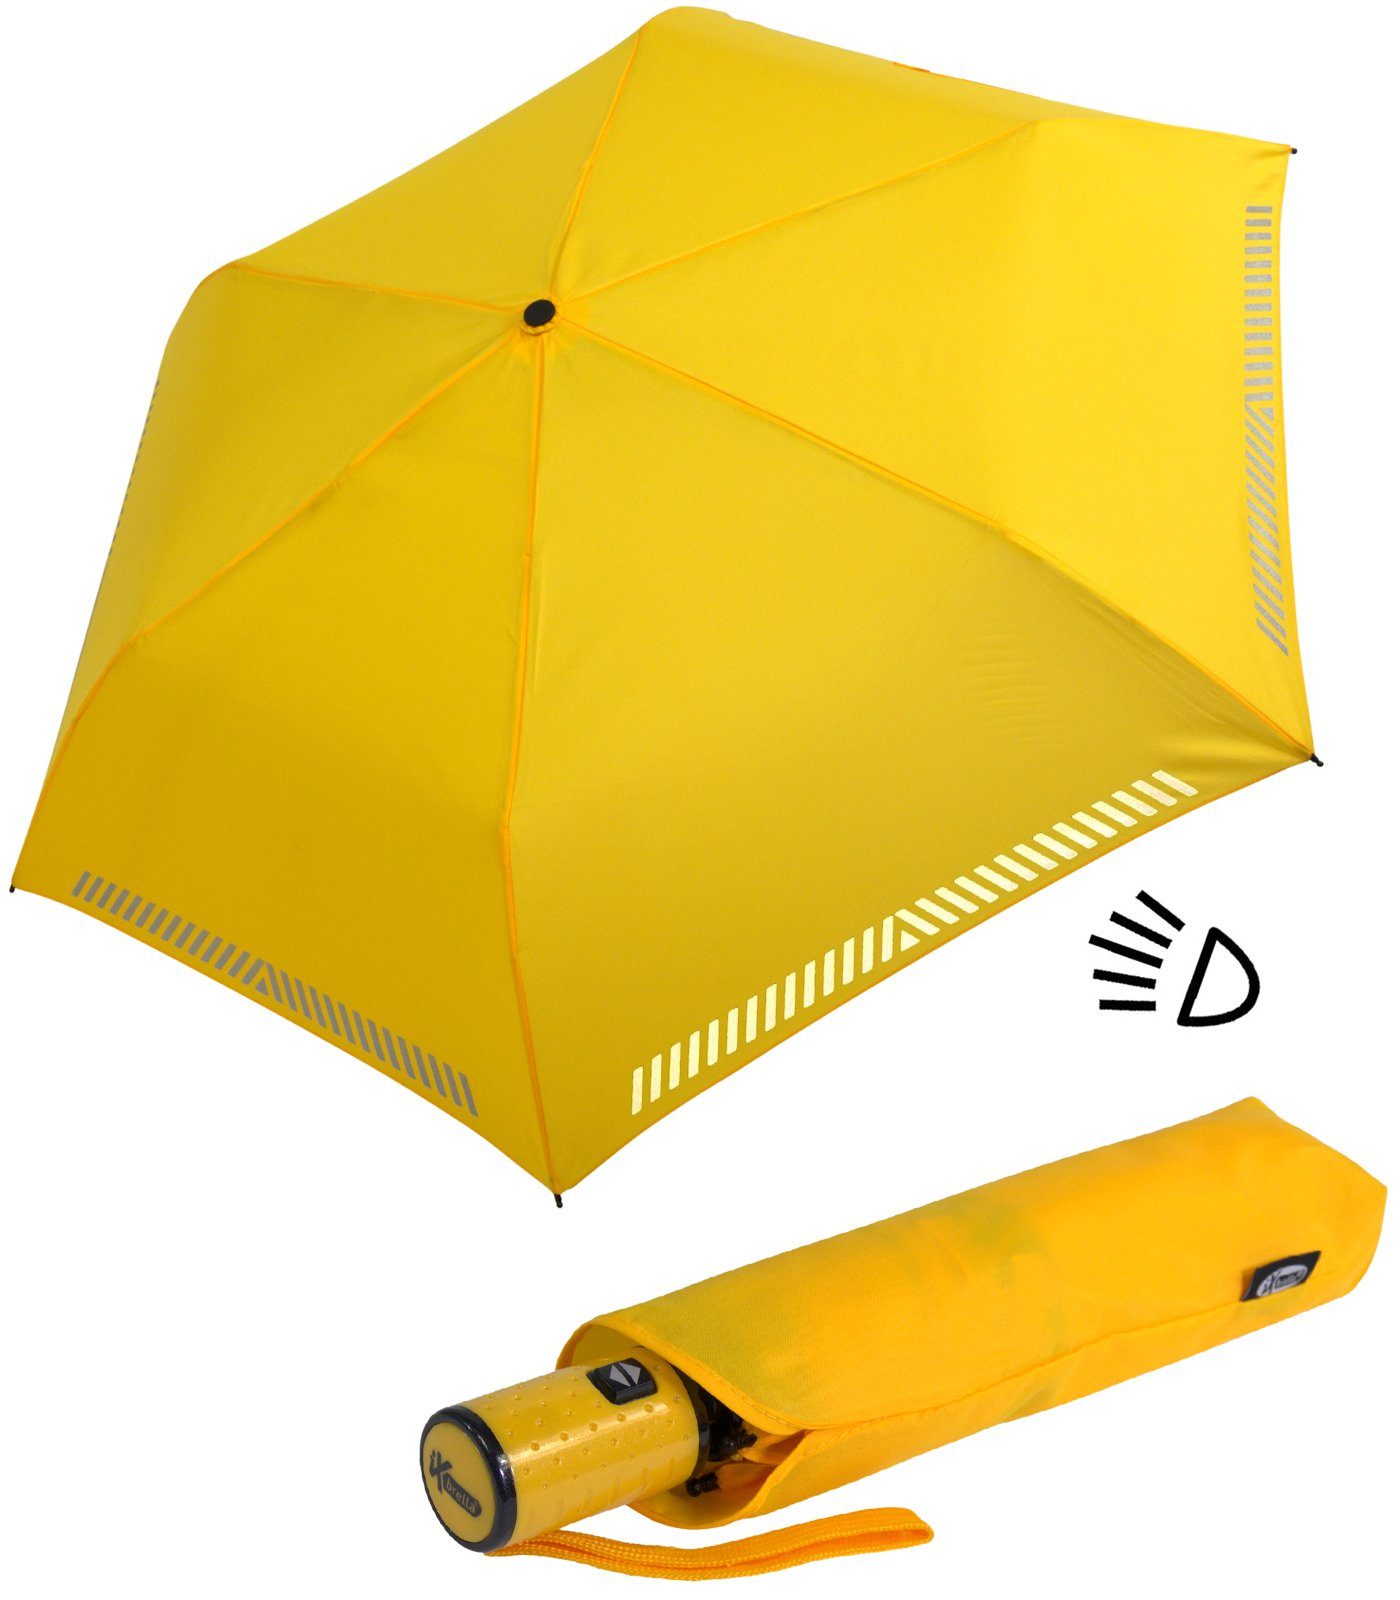 iX-brella Taschenregenschirm Kinderschirm mit Auf-Zu-Automatik, reflektierend, Sicherheit durch Reflex-Streifen - gelb